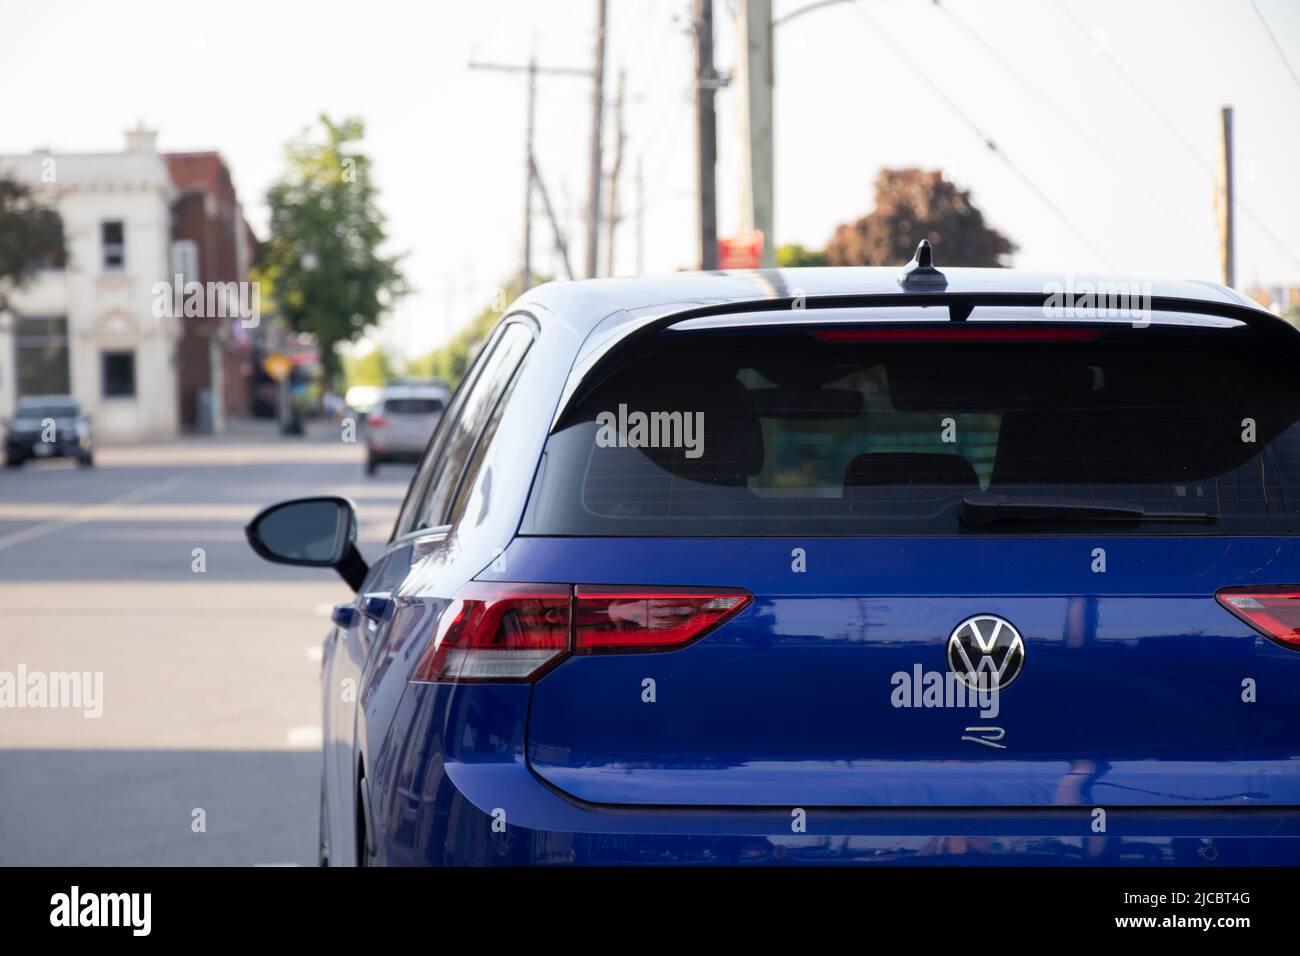 La parte trasera de un VW azul, Volkswagen Golf R se ve mientras está estacionado en una calle de la ciudad en una tarde soleada Foto de stock